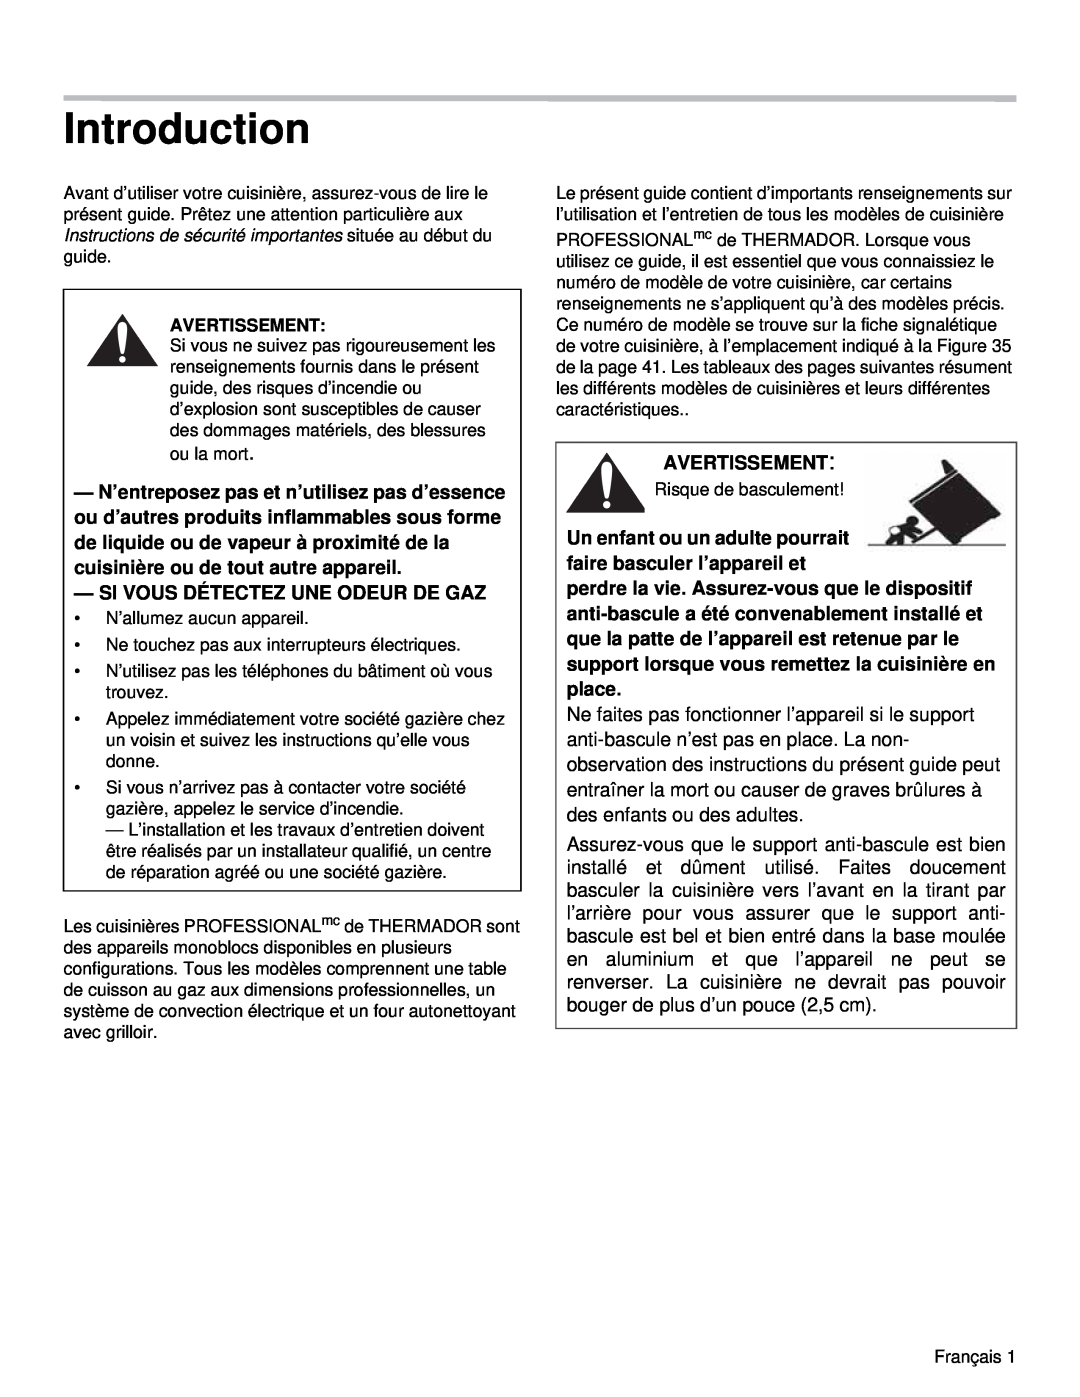 Thermador PRD48, PRD36 manual Introduction, Si Vous Détectez Une Odeur De Gaz, Avertissement 